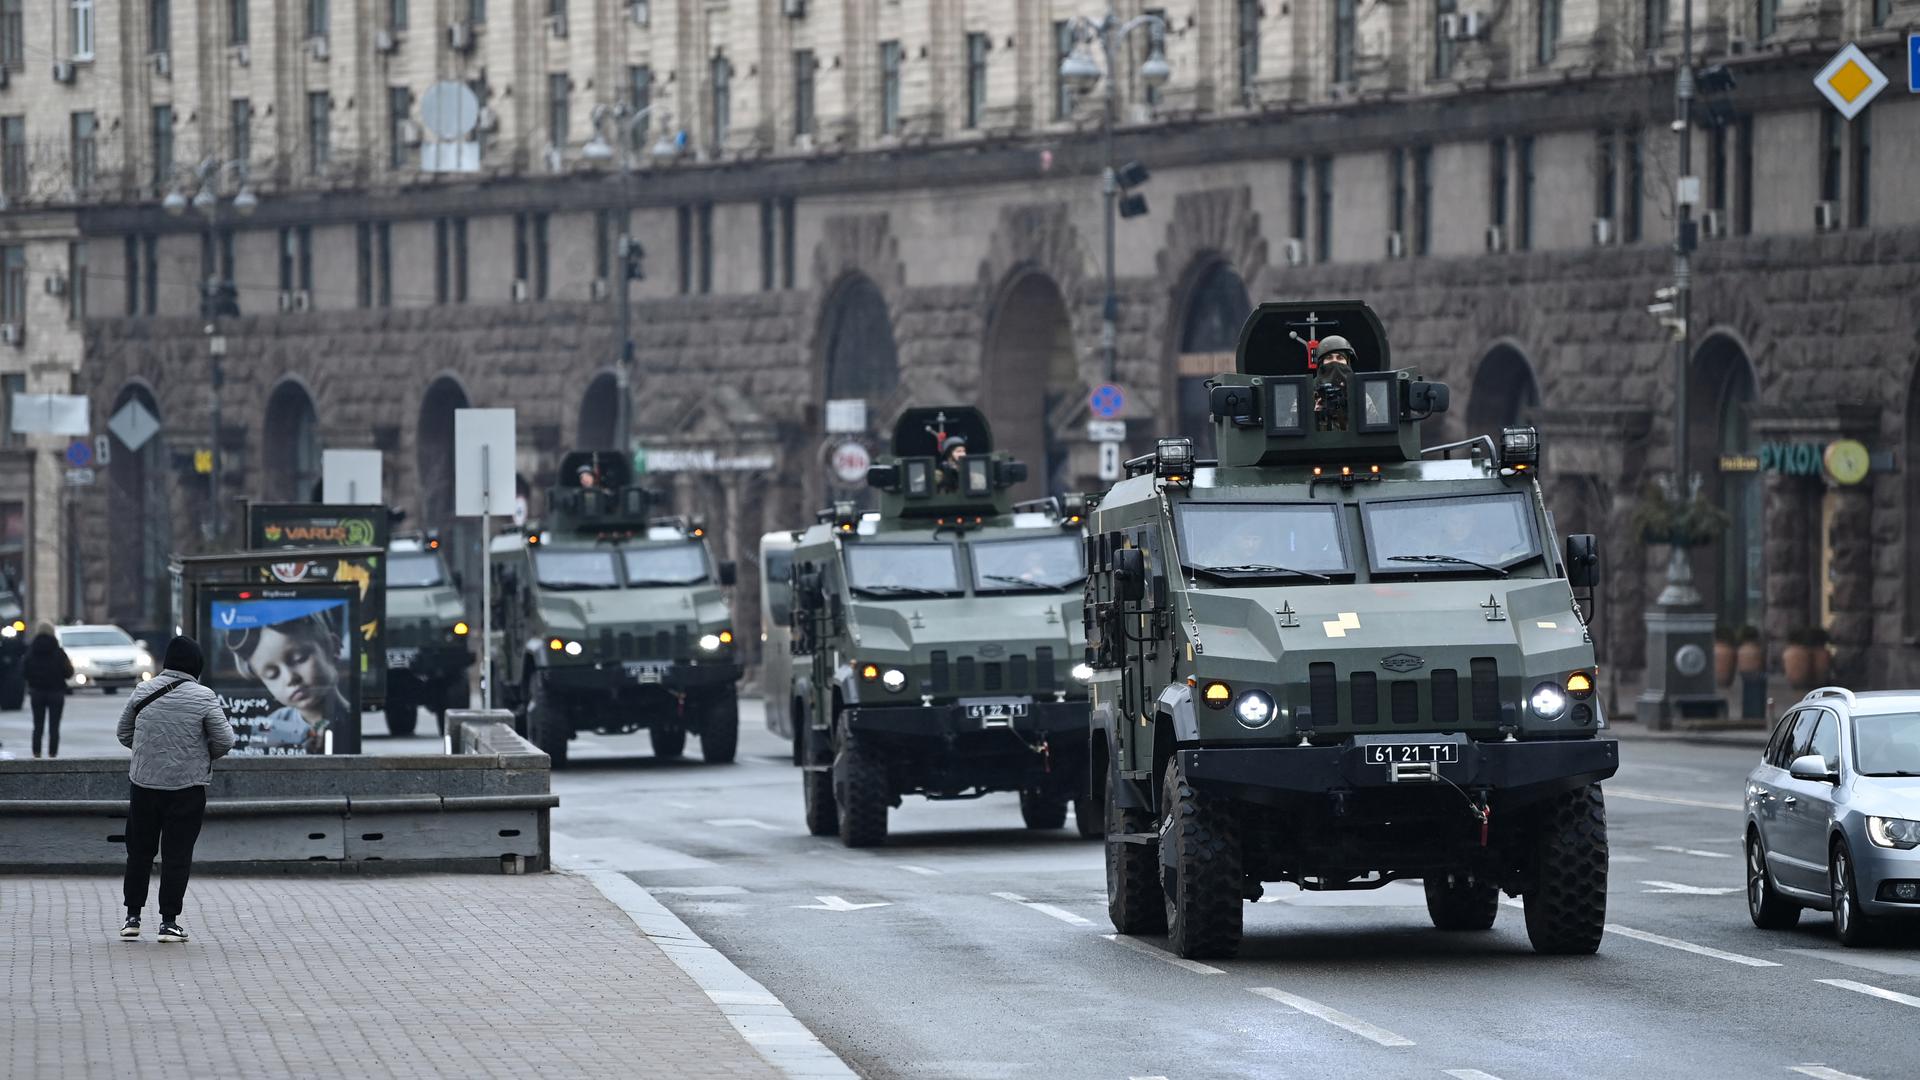 Ukraines Verteidigungsfall: Ukrainische Militärfahrzeuge in Kiew - der Dreimillionenstadt, die heute offenbar aus der Luft angegriffen wurde. Militärexperten erwarten, dass die ukrainische Armee die russische Aggression eine Weile aufhalten, aber nicht stoppen kann.